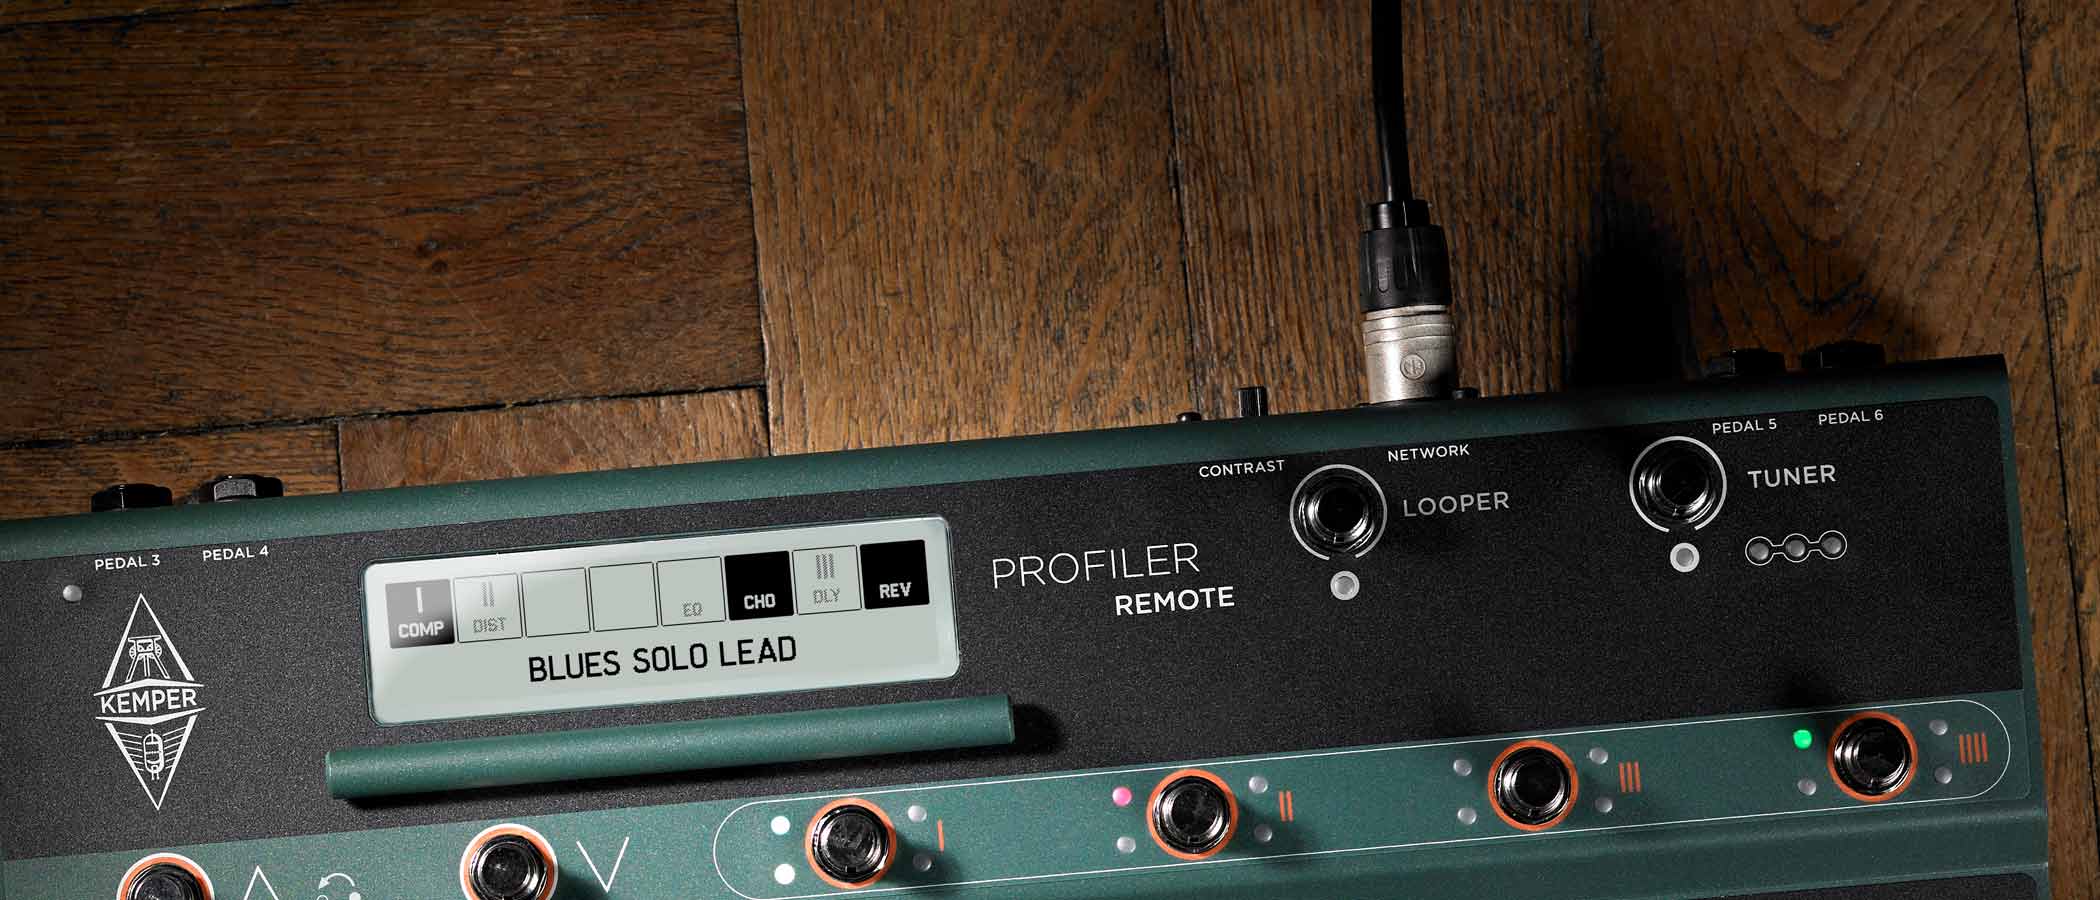 PROFILER Remote cable